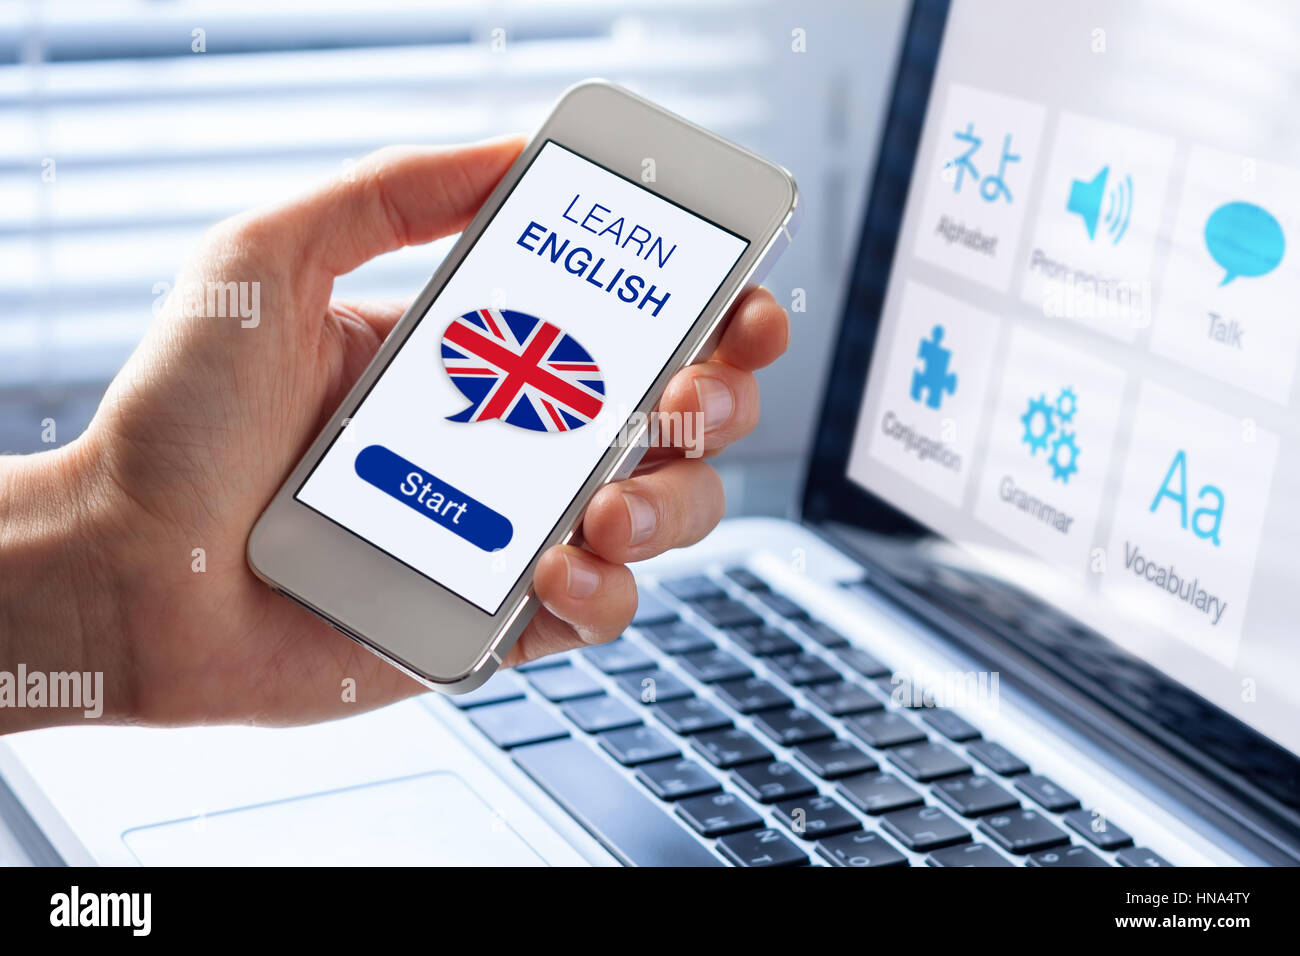 Apprendre l'anglais en ligne langue concept avec une personne montrant e-learning application sur téléphone mobile avec le drapeau britannique du Royaume-Uni Banque D'Images